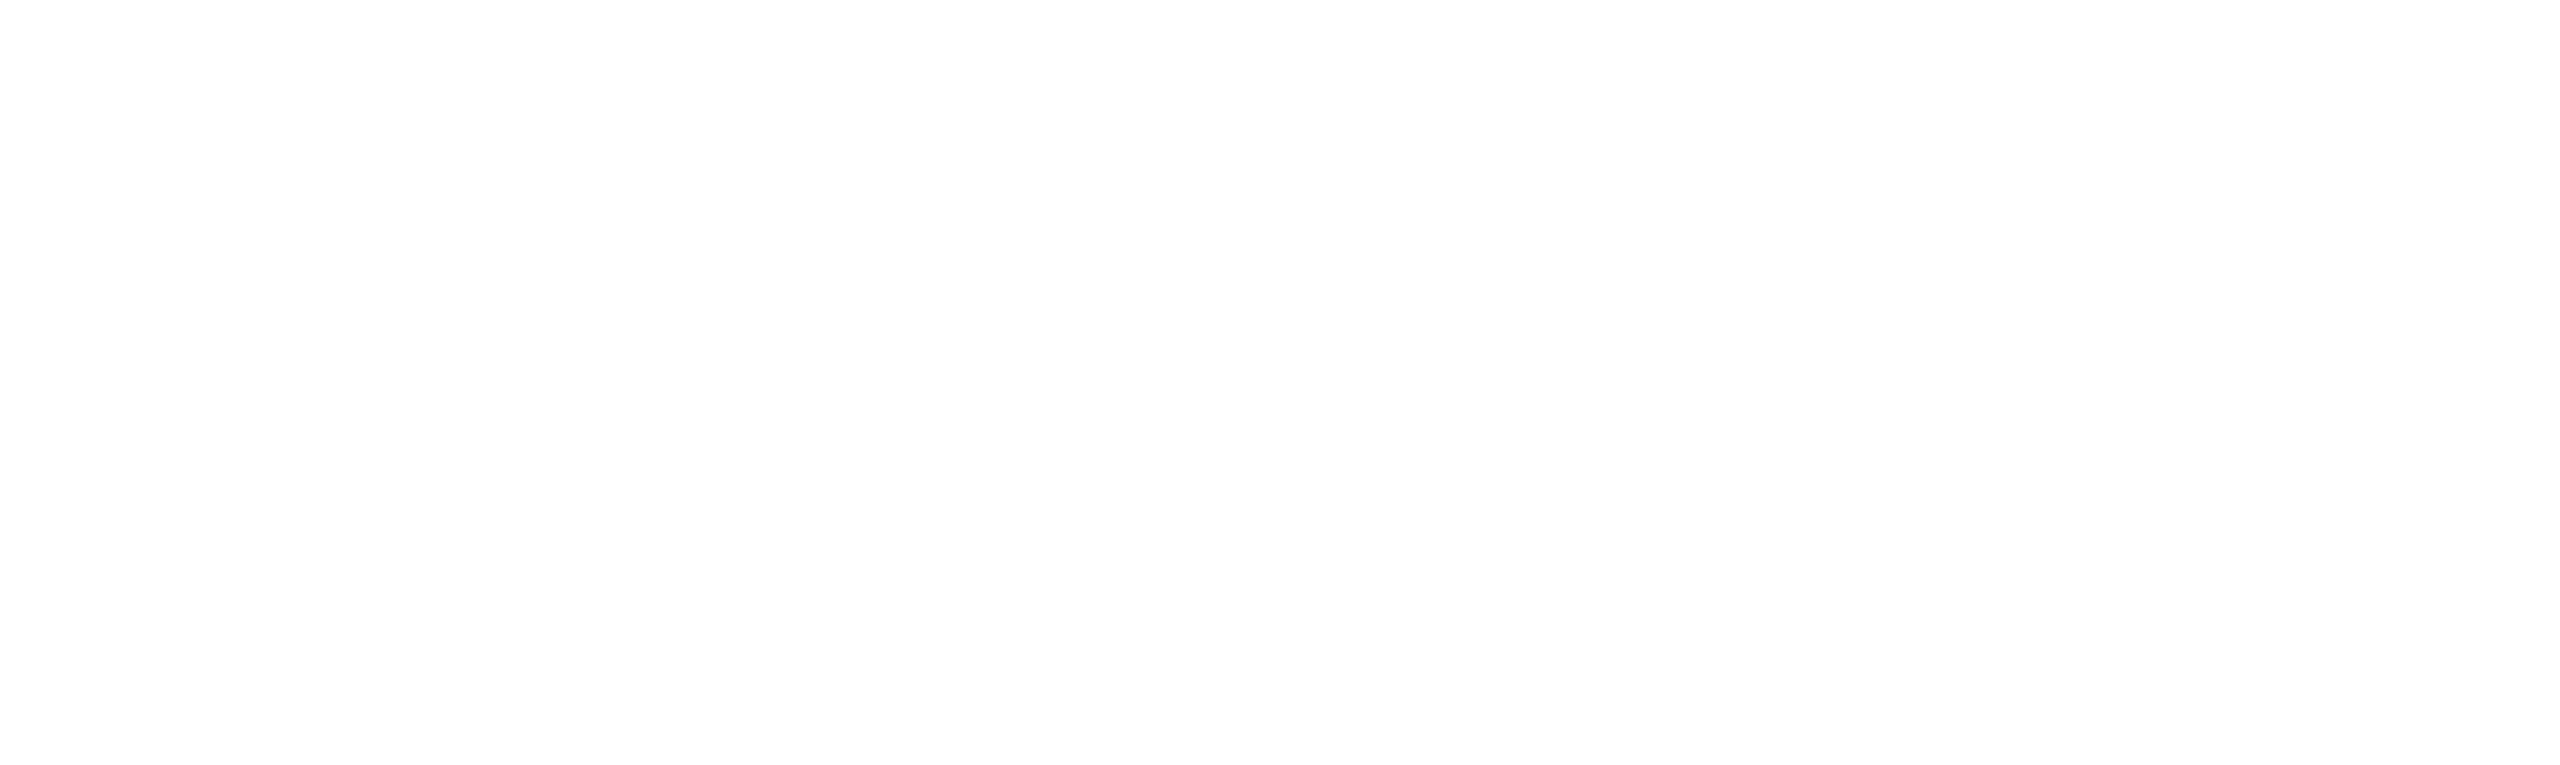 rbi-logo-logo-white